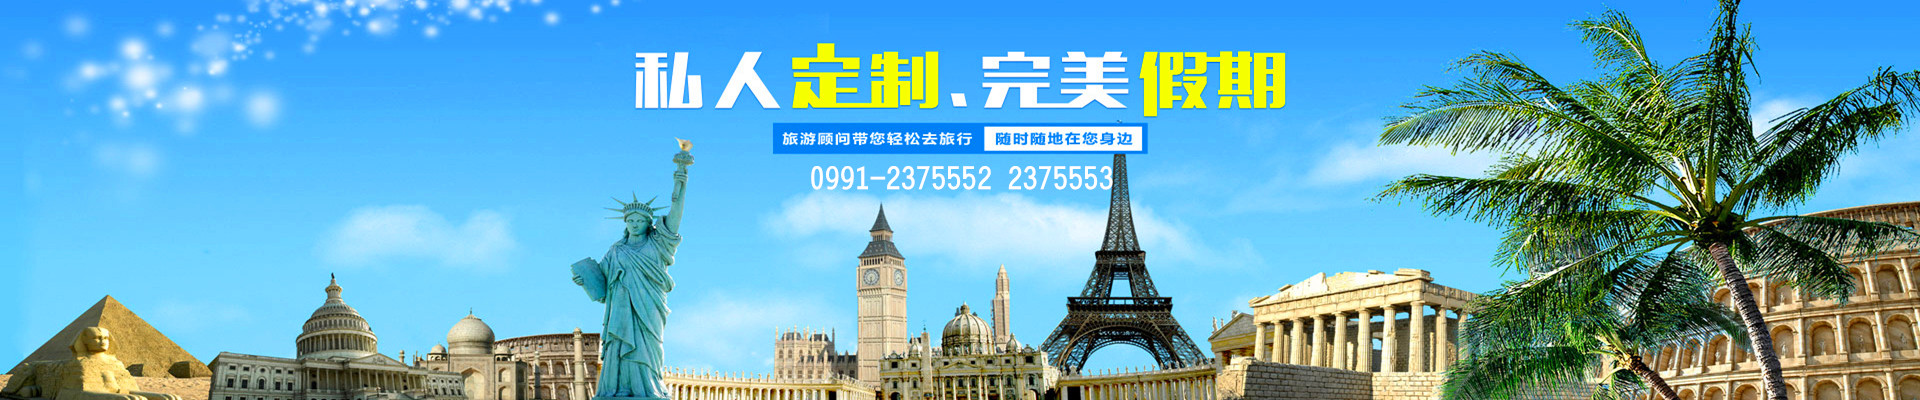 新疆中国旅行社欢迎您